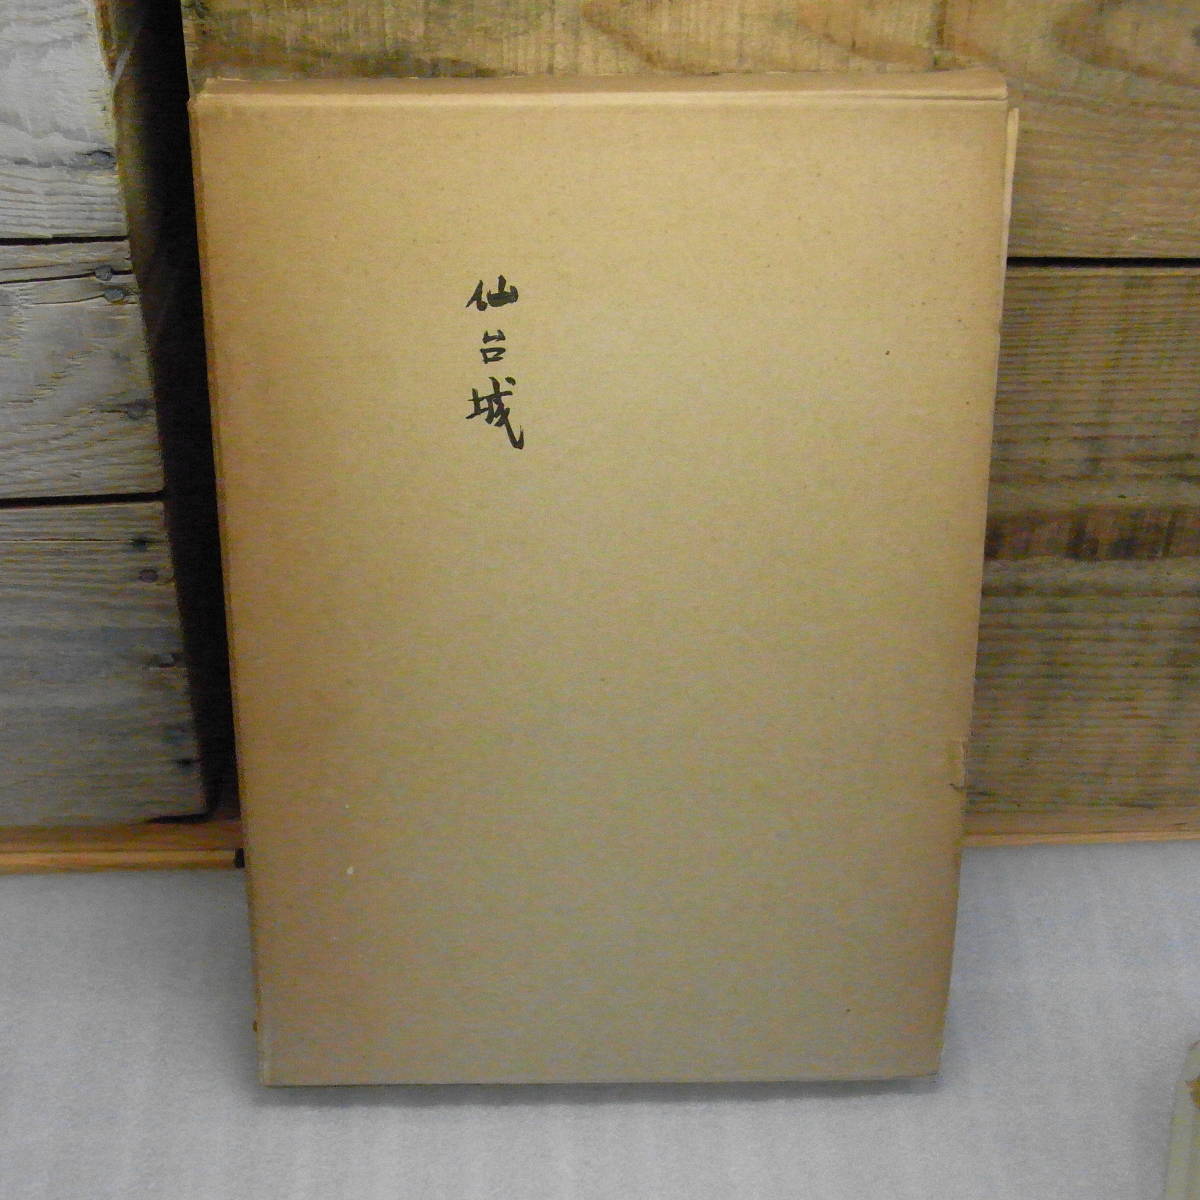  сэндай замок map версия 6 листов приложен сэндай город культура состояние защита комитет Showa 42 год Miyagi префектура синий лист замок date ..